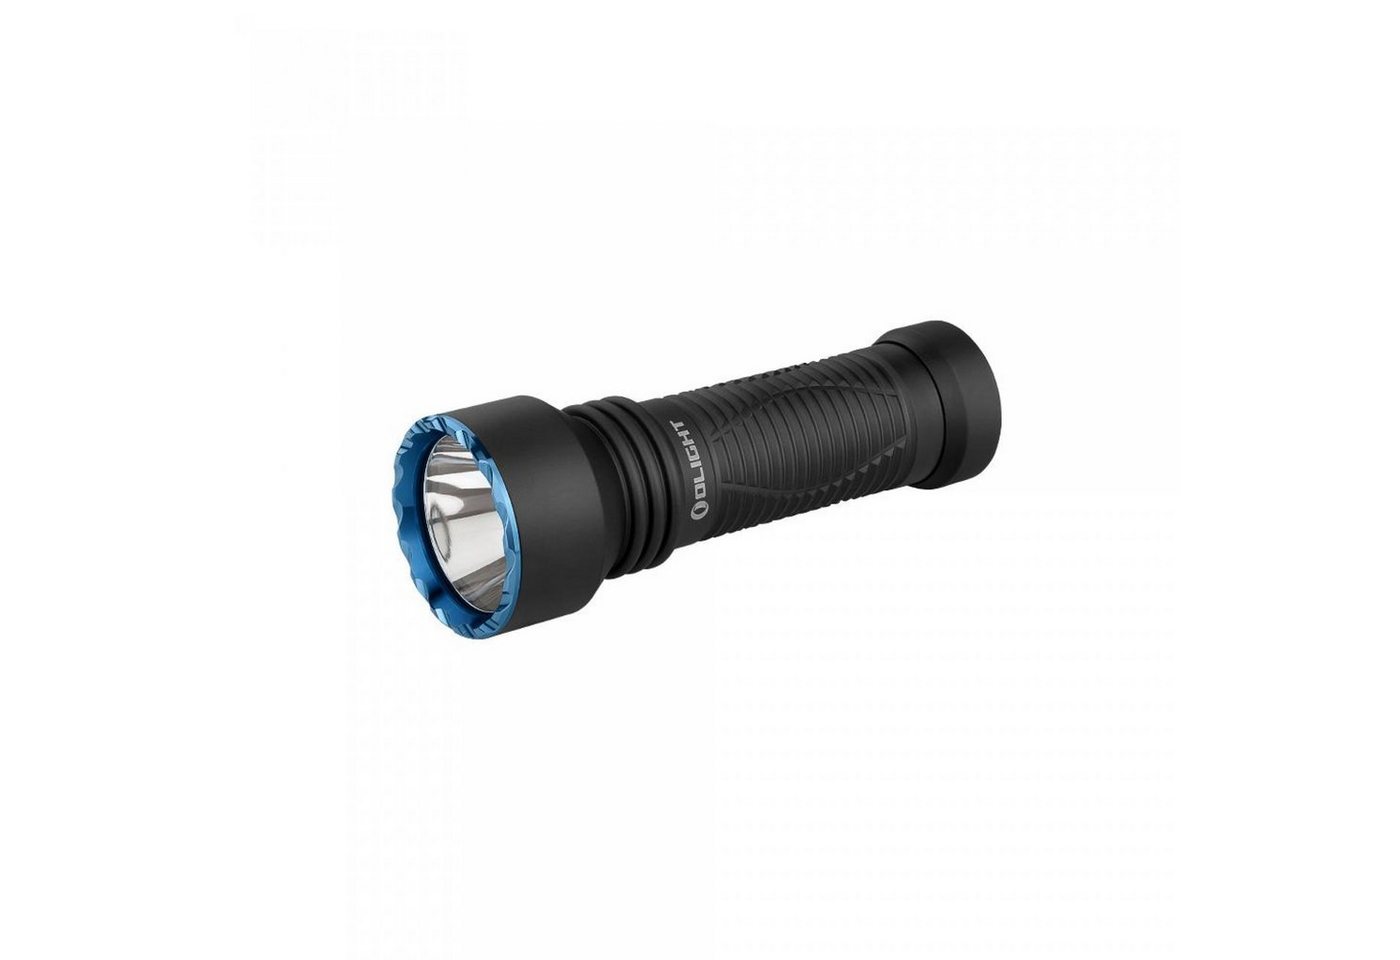 OLIGHT LED Taschenlampe Javelot Mini LED taktische Taschenlampe mit einer runden Lichtquelle, wiederaufbare IPX8 zoombare Handlampe für Notfall, Patrouille, Camping von OLIGHT